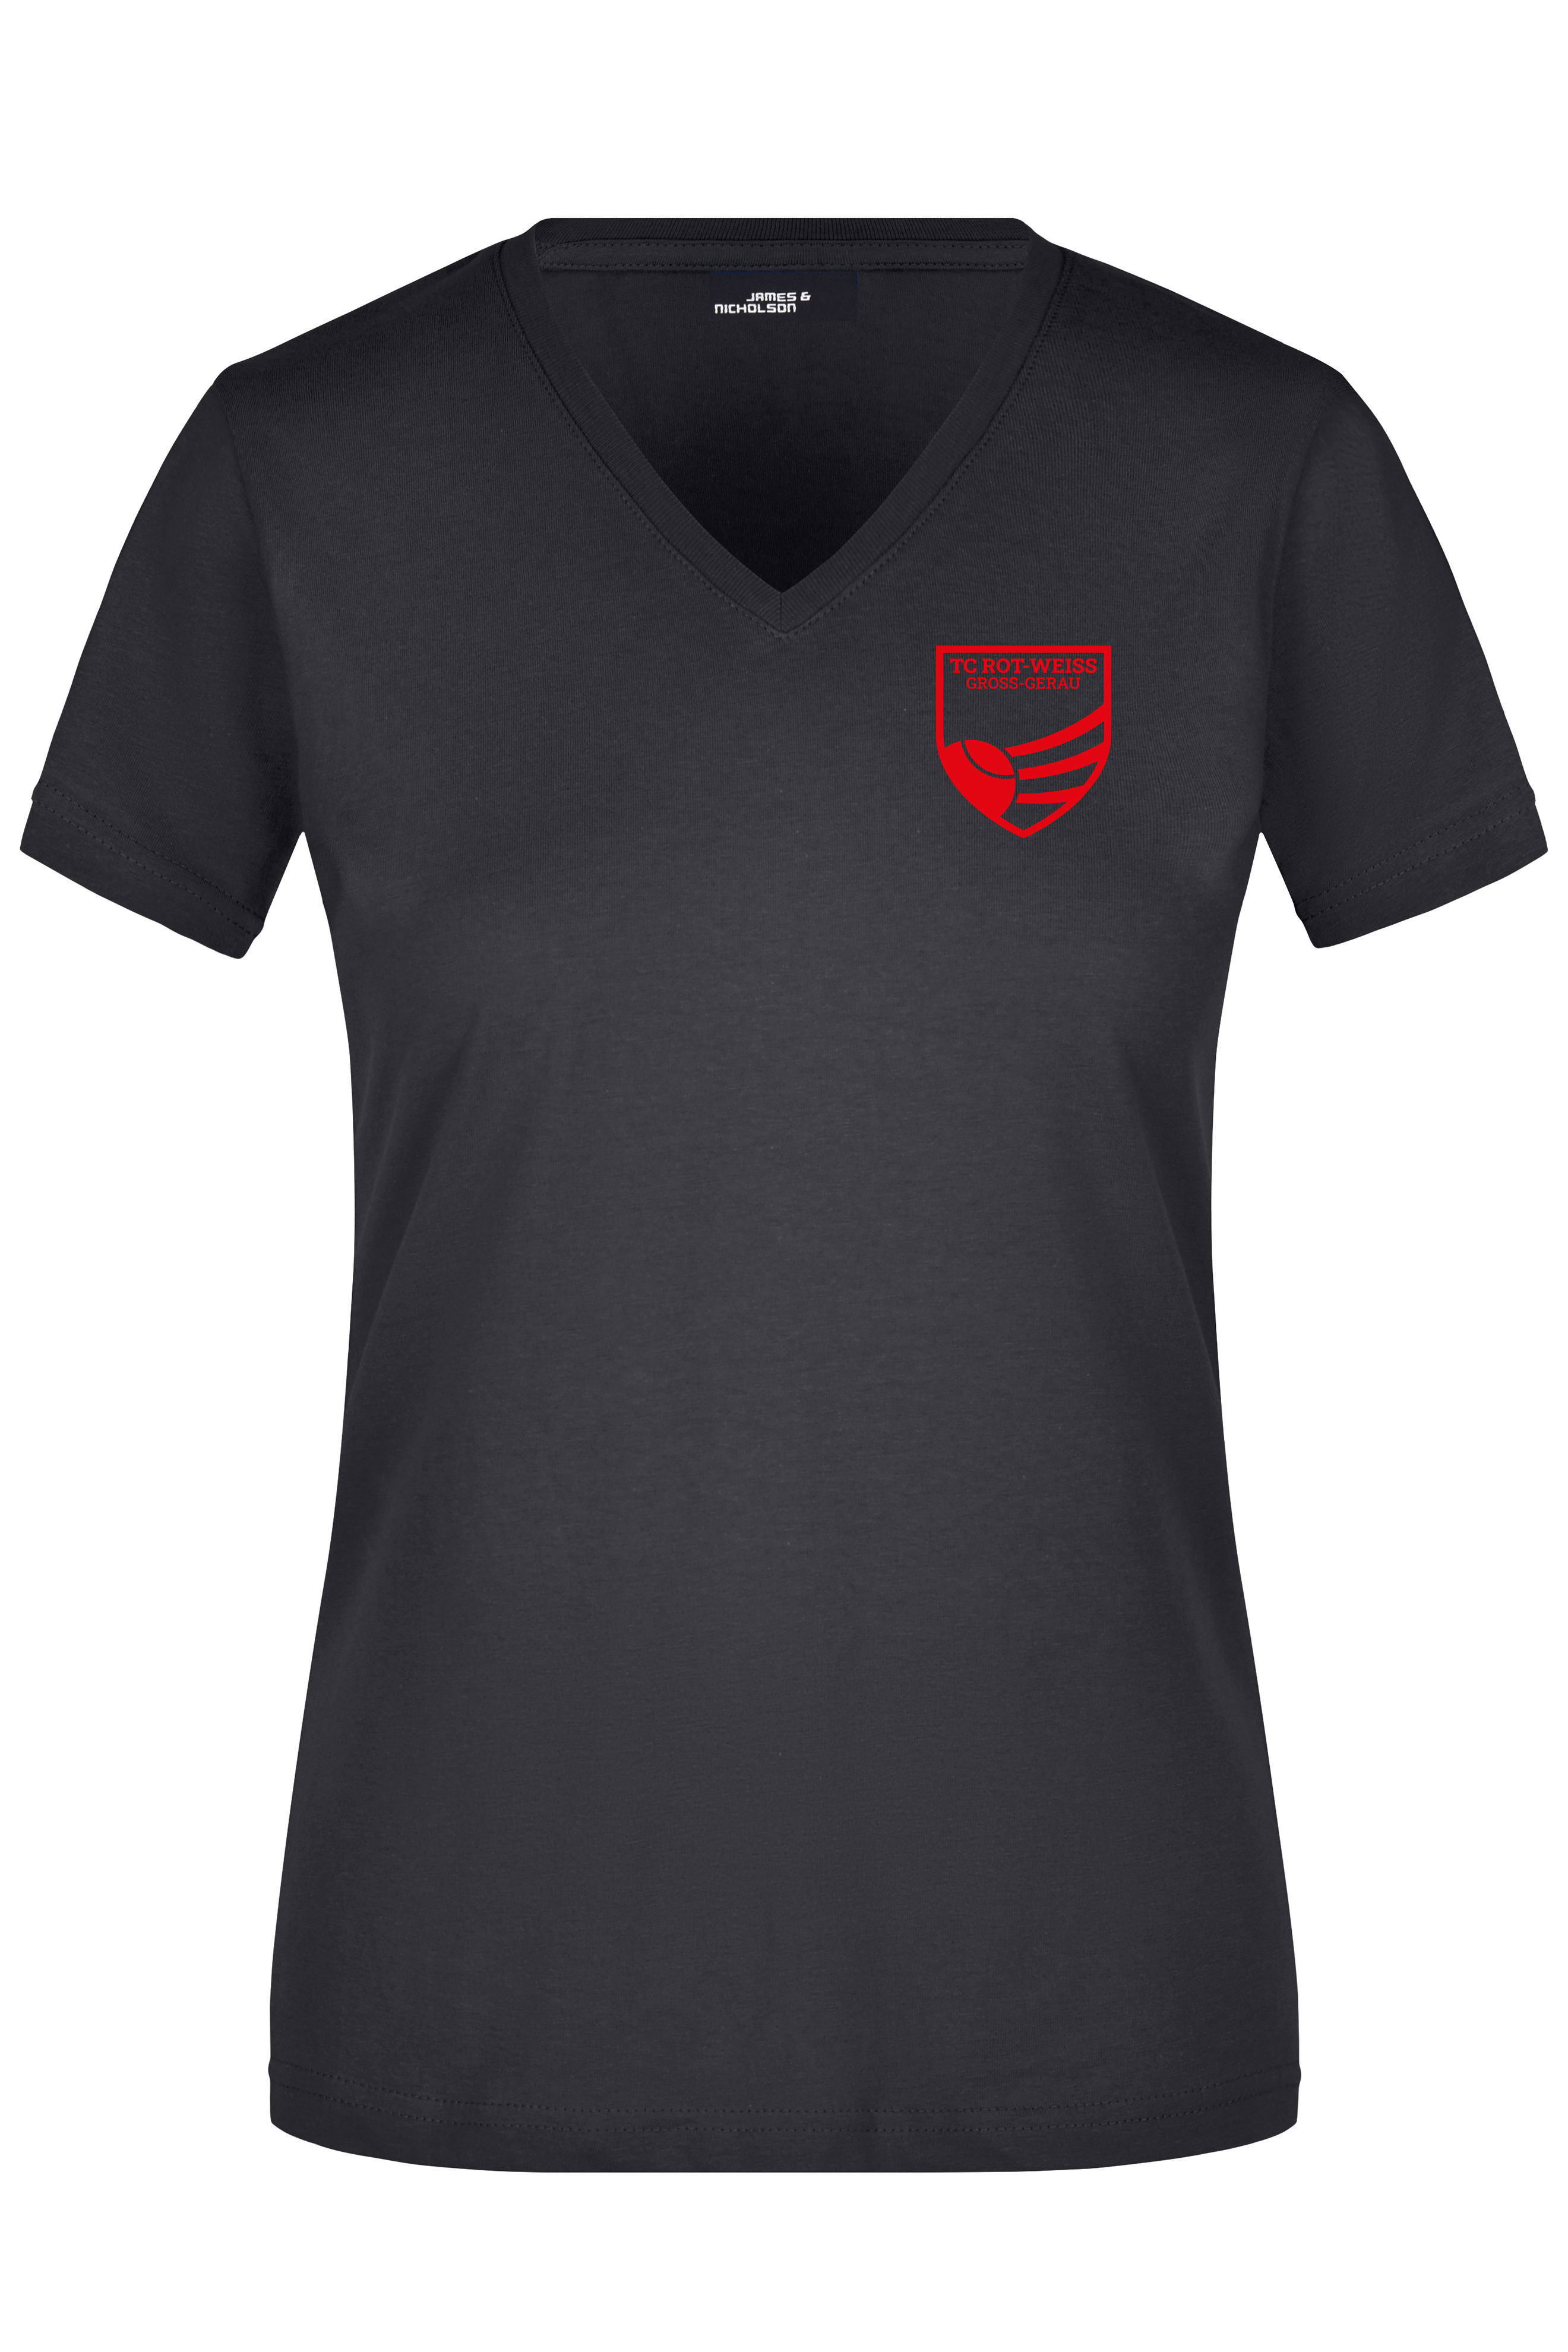 TC Rot-Weiss Girly T-Shirt rot auf schwarz